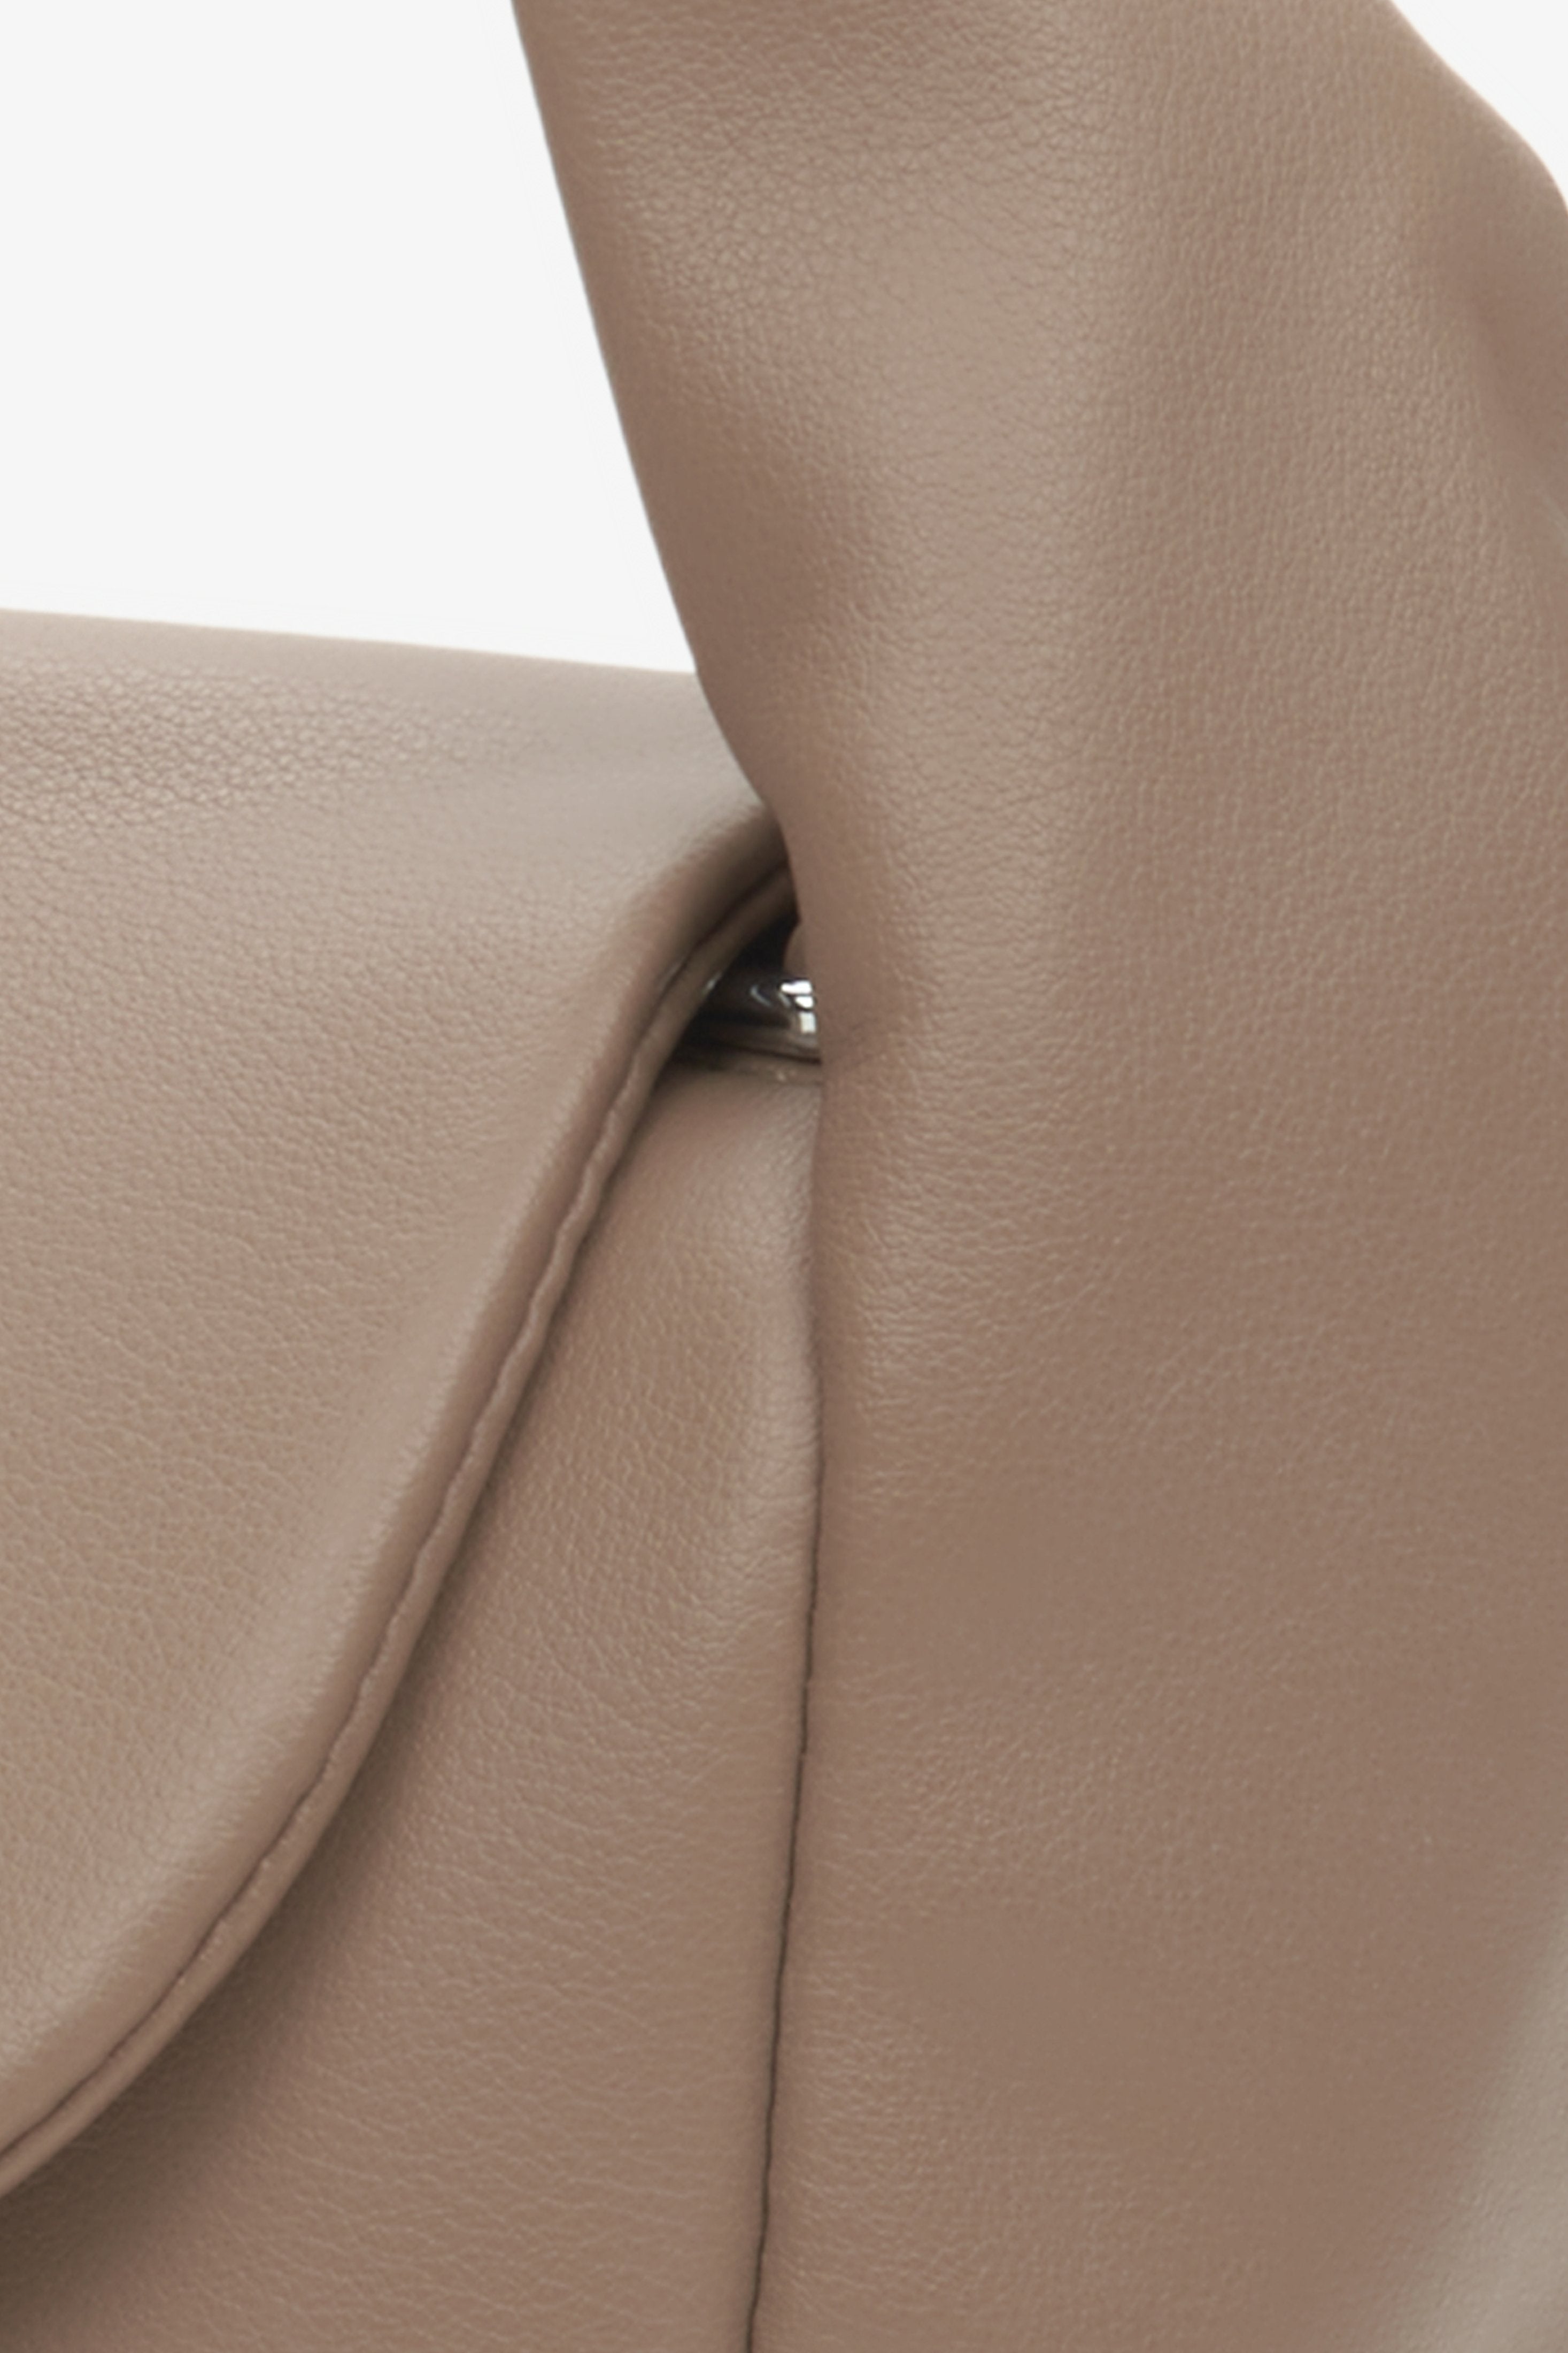 Skórzana torebka w kolorze brązowym - zbliżenie na detale.